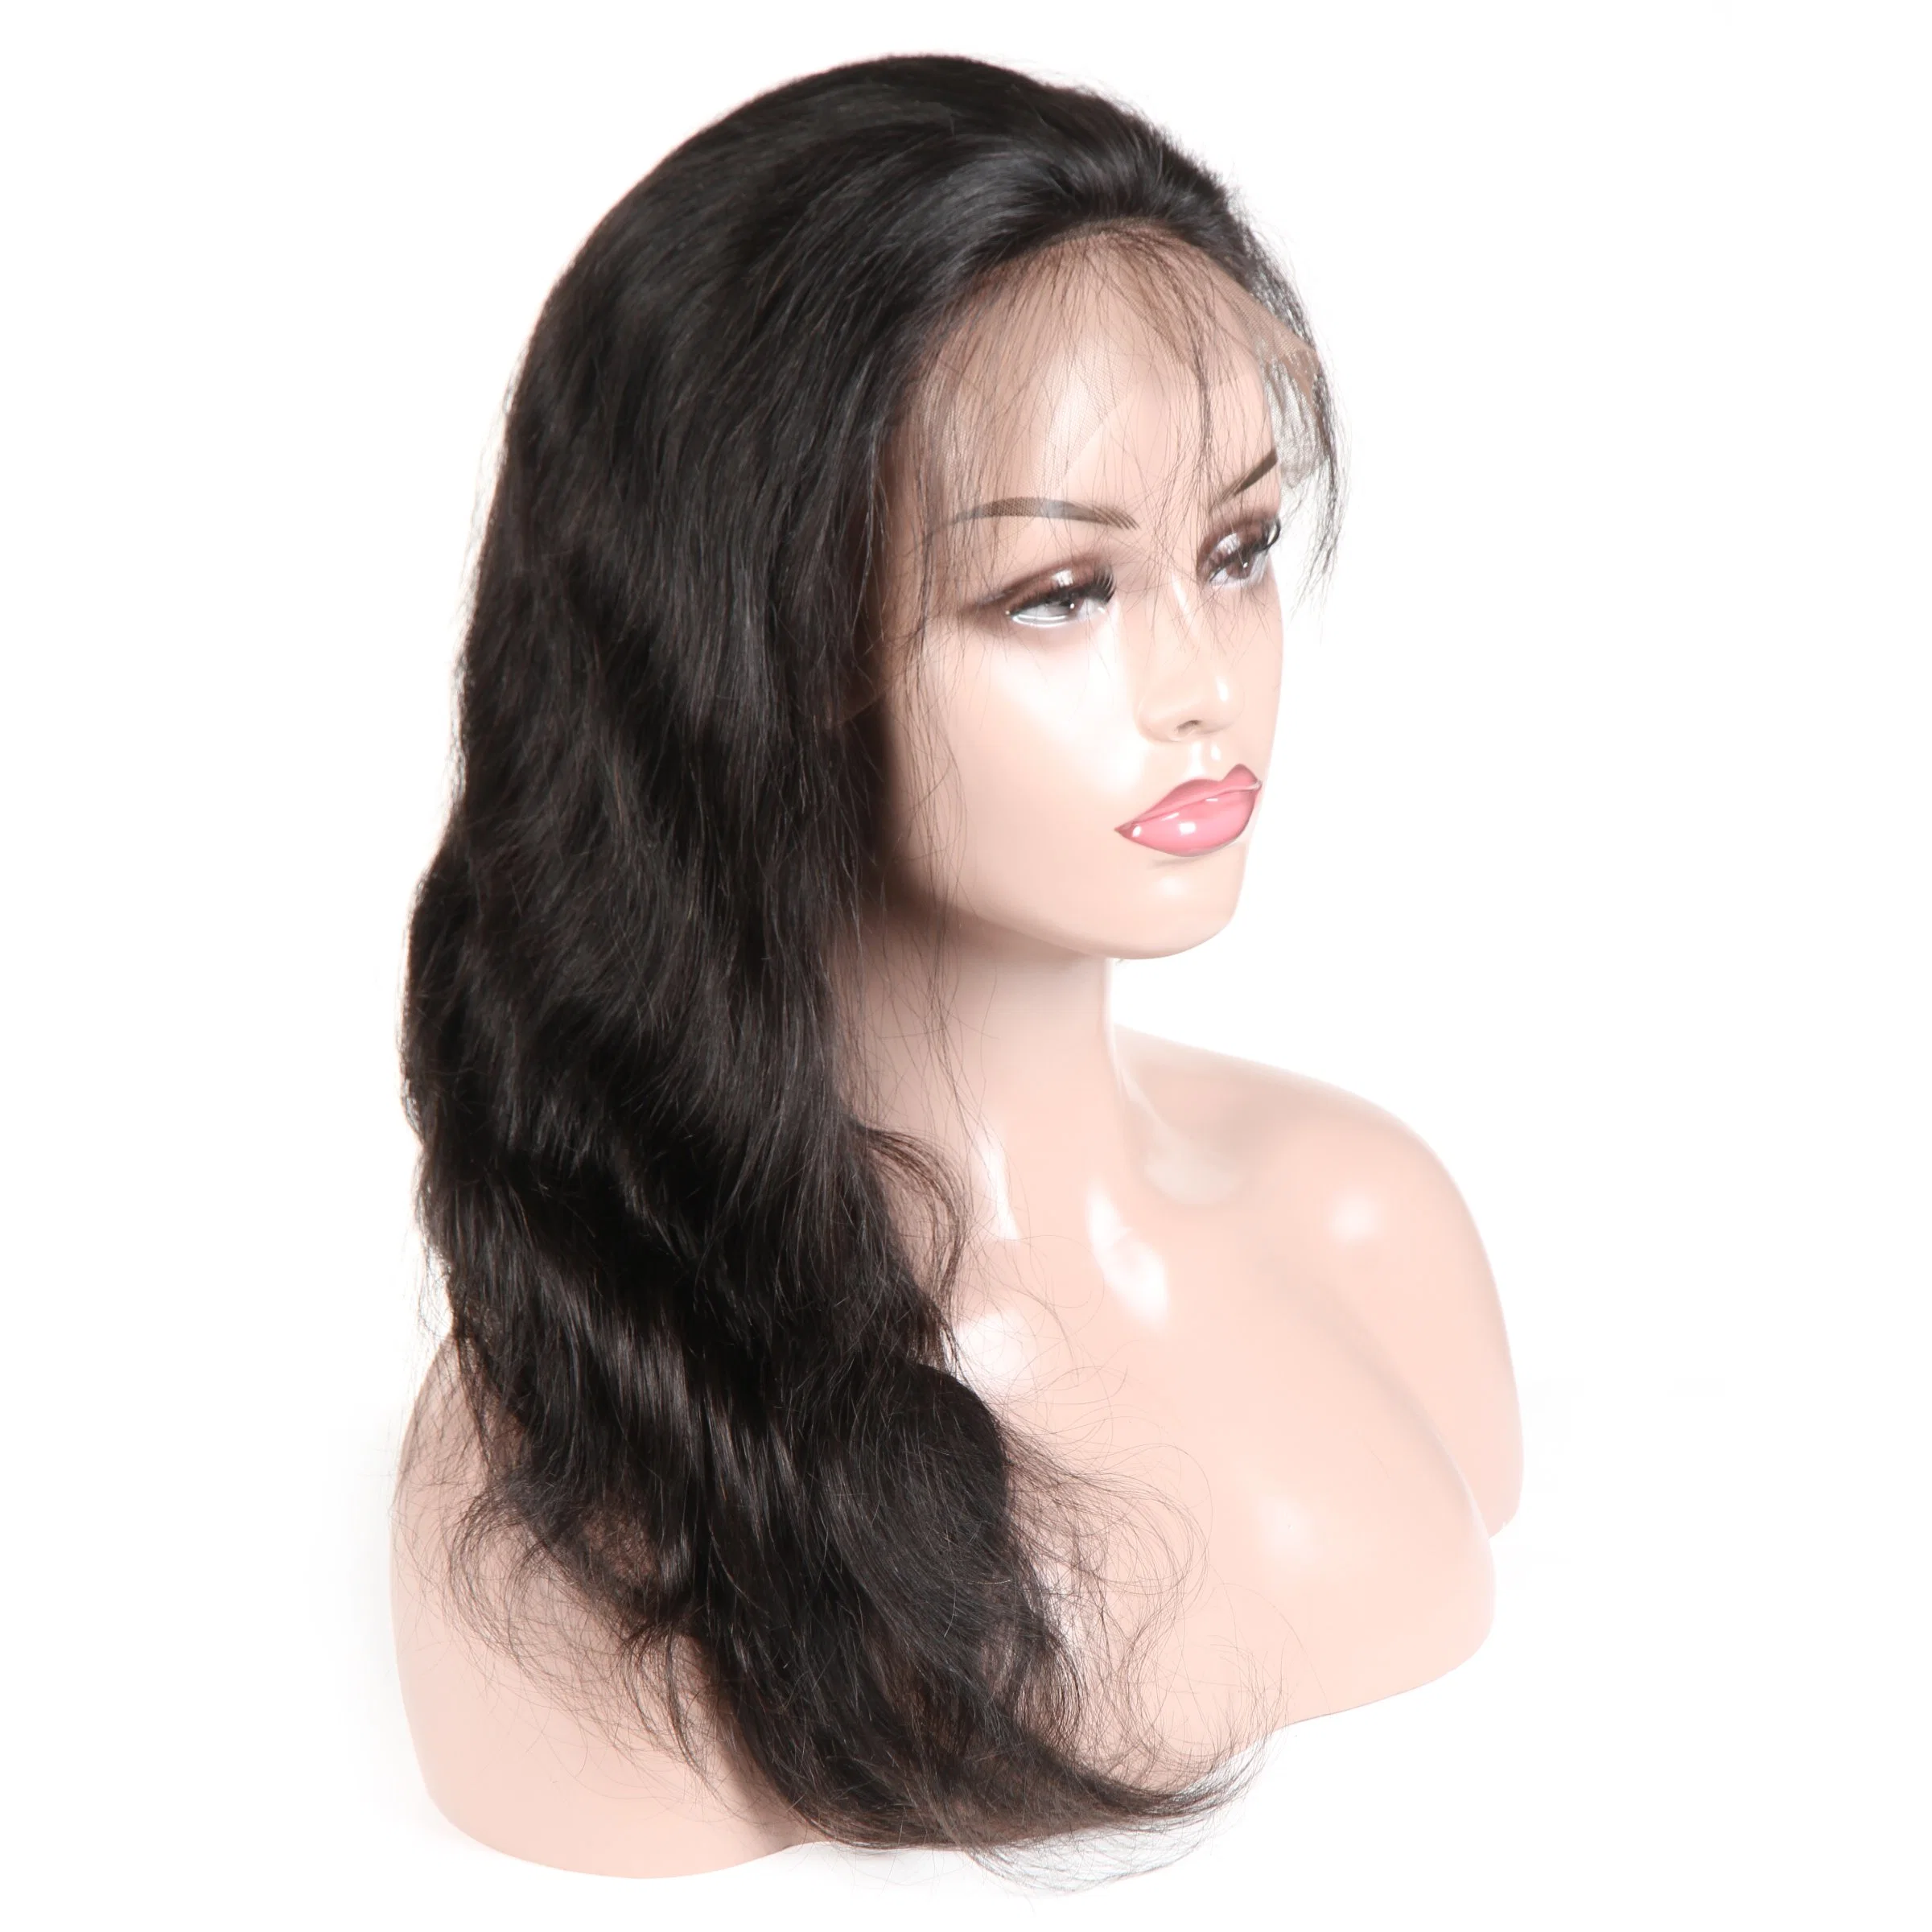 موجة Kbeth للجسم Wigs للمرأة السوداء الأمريكية 2021 الصيف البيع الساخن 100% الحقيقي للخدمة الشاقة مخصص أمامي 20 بوصة الطول ريمي الشعر البشري wigs بائع الجملة